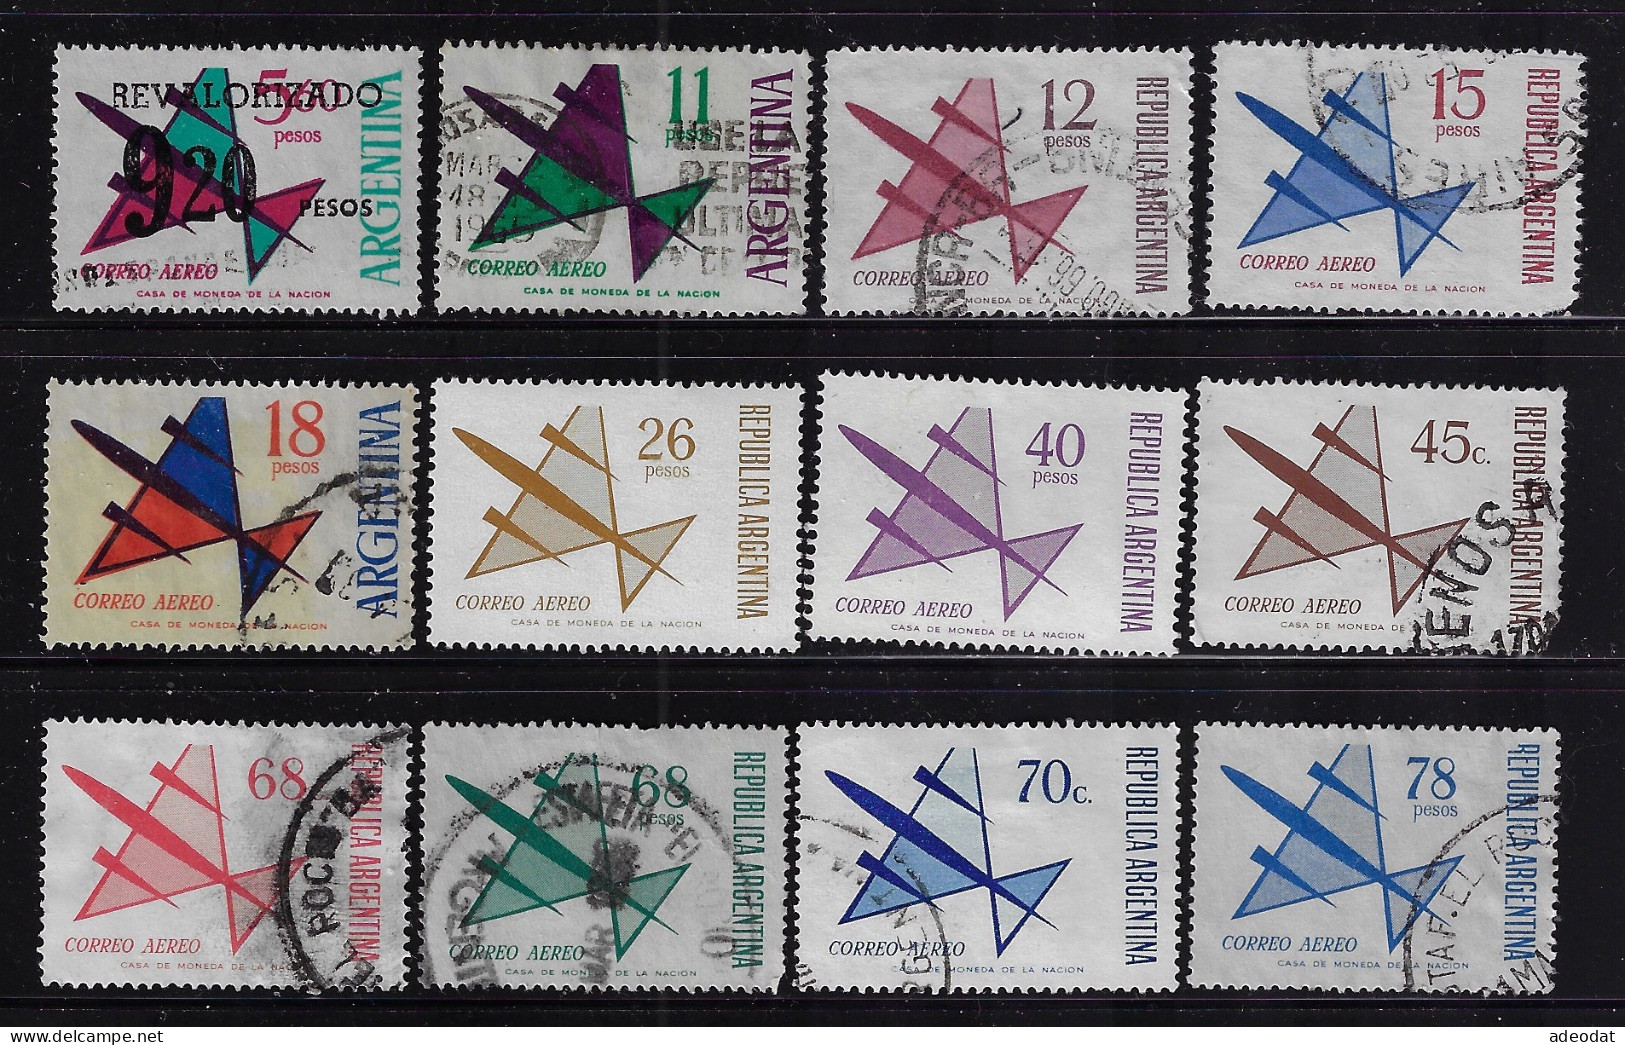 ARGENTINA 1963-1967  AIR POST STAMPS  SCOTT #C87,C89,C90,C101,C102,C108-C111,C135-C137,C149  USED - Used Stamps